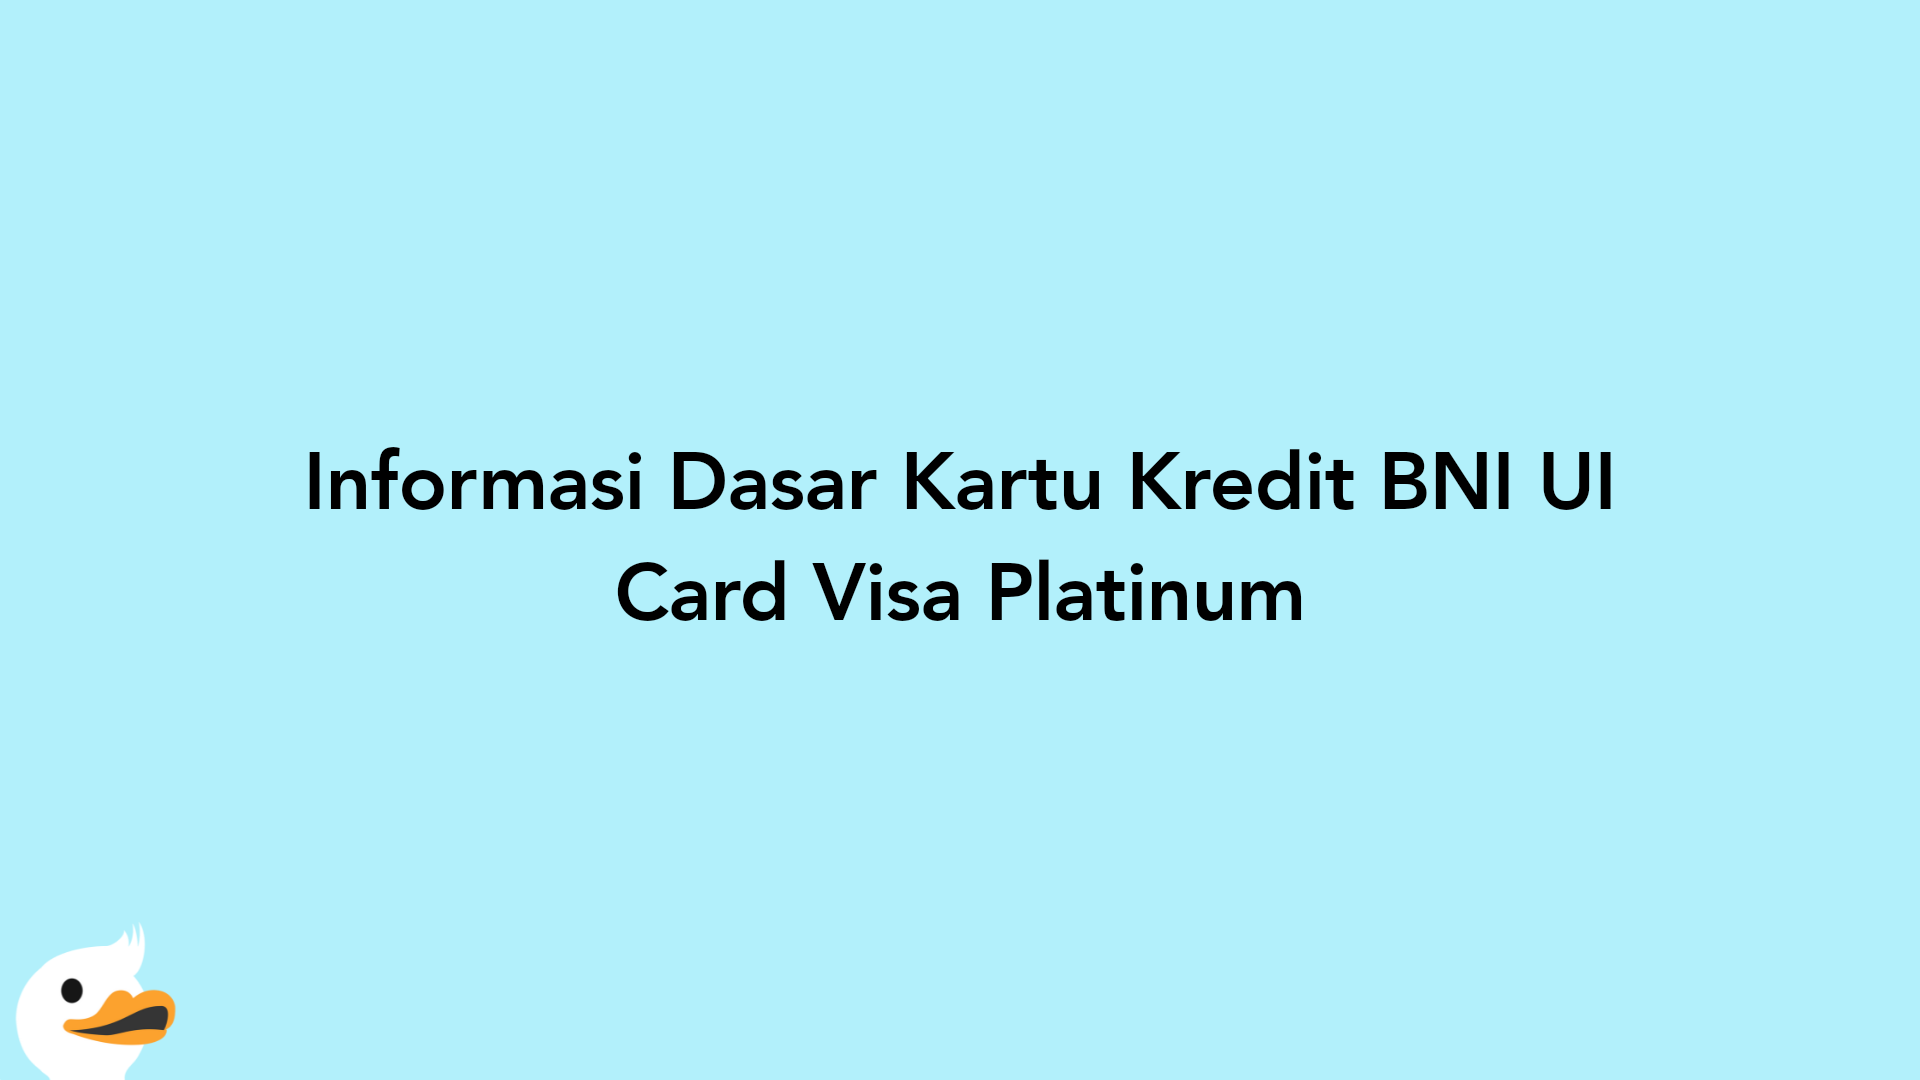 Informasi Dasar Kartu Kredit BNI UI Card Visa Platinum